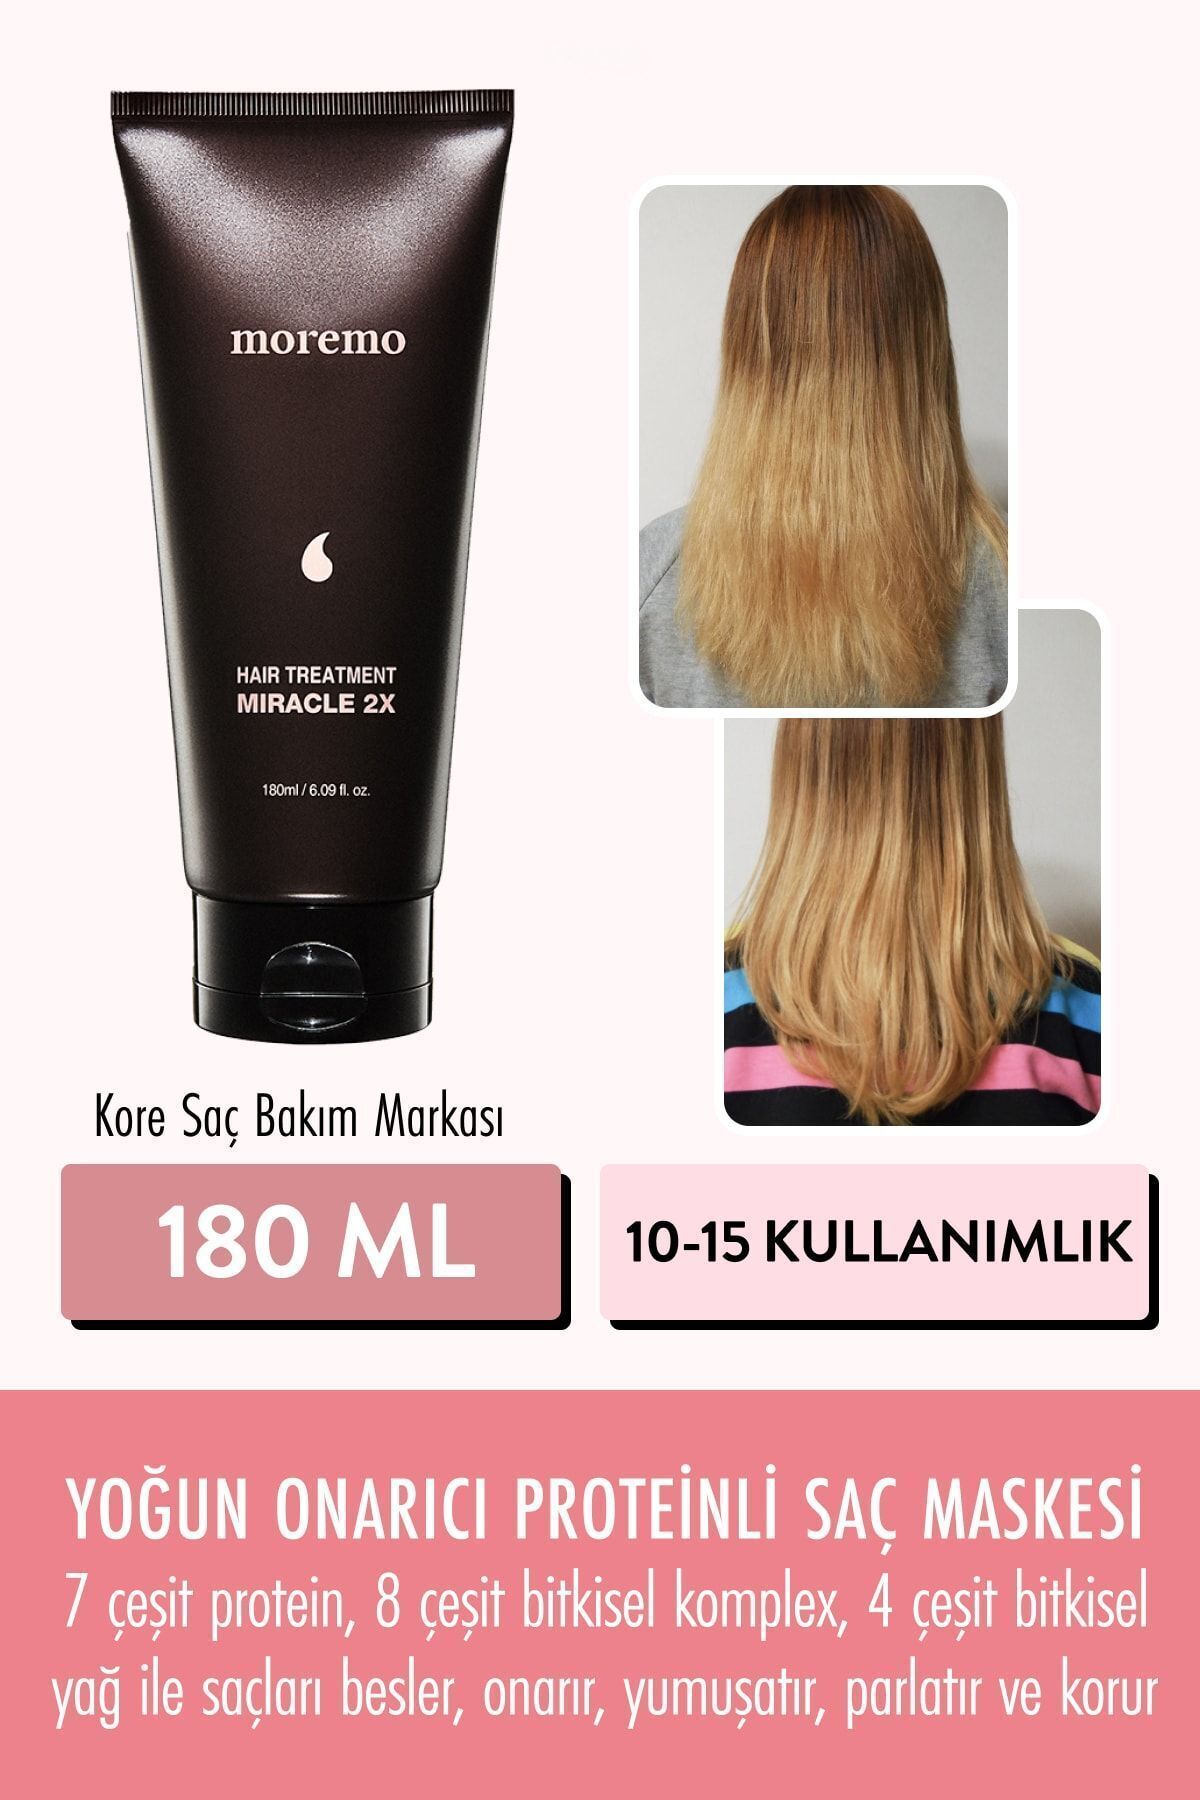 Moremo Hair Treatment 2x Miracle (KORENDY) Onarıcı Saç Maskesi 180 ml